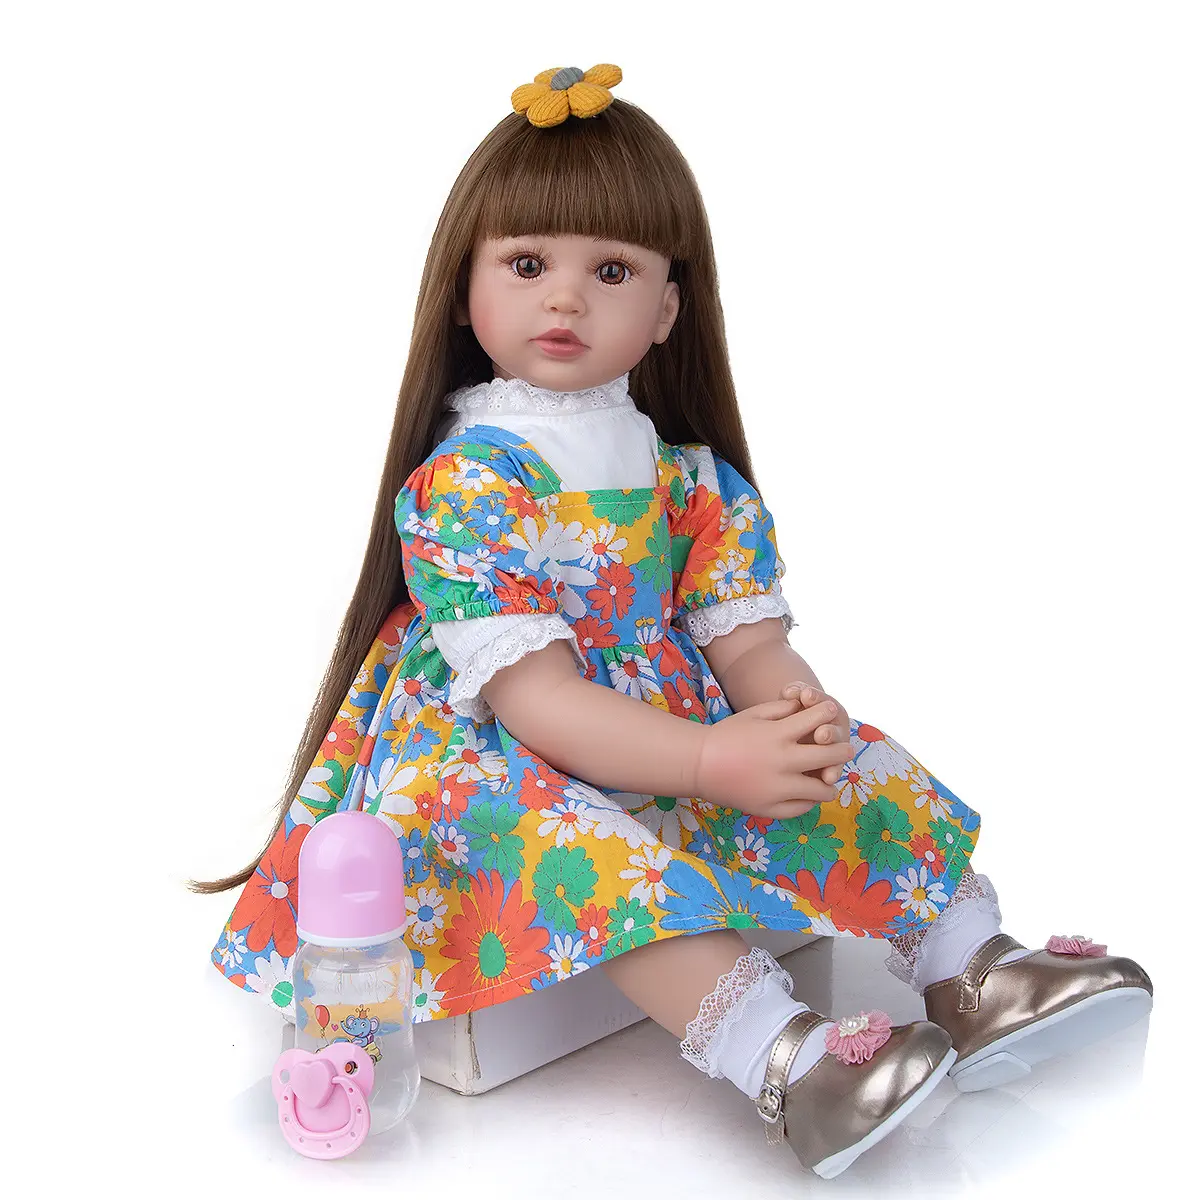 ตุ๊กตา Reborn Doll,ชุดเดรสผมยาวขนาด60ซม. ตุ๊กตาทารกซิลิโคนเด็กทารกเกิดใหม่เหมือนจริงสำหรับเป็นของขวัญของเด็กผู้หญิง